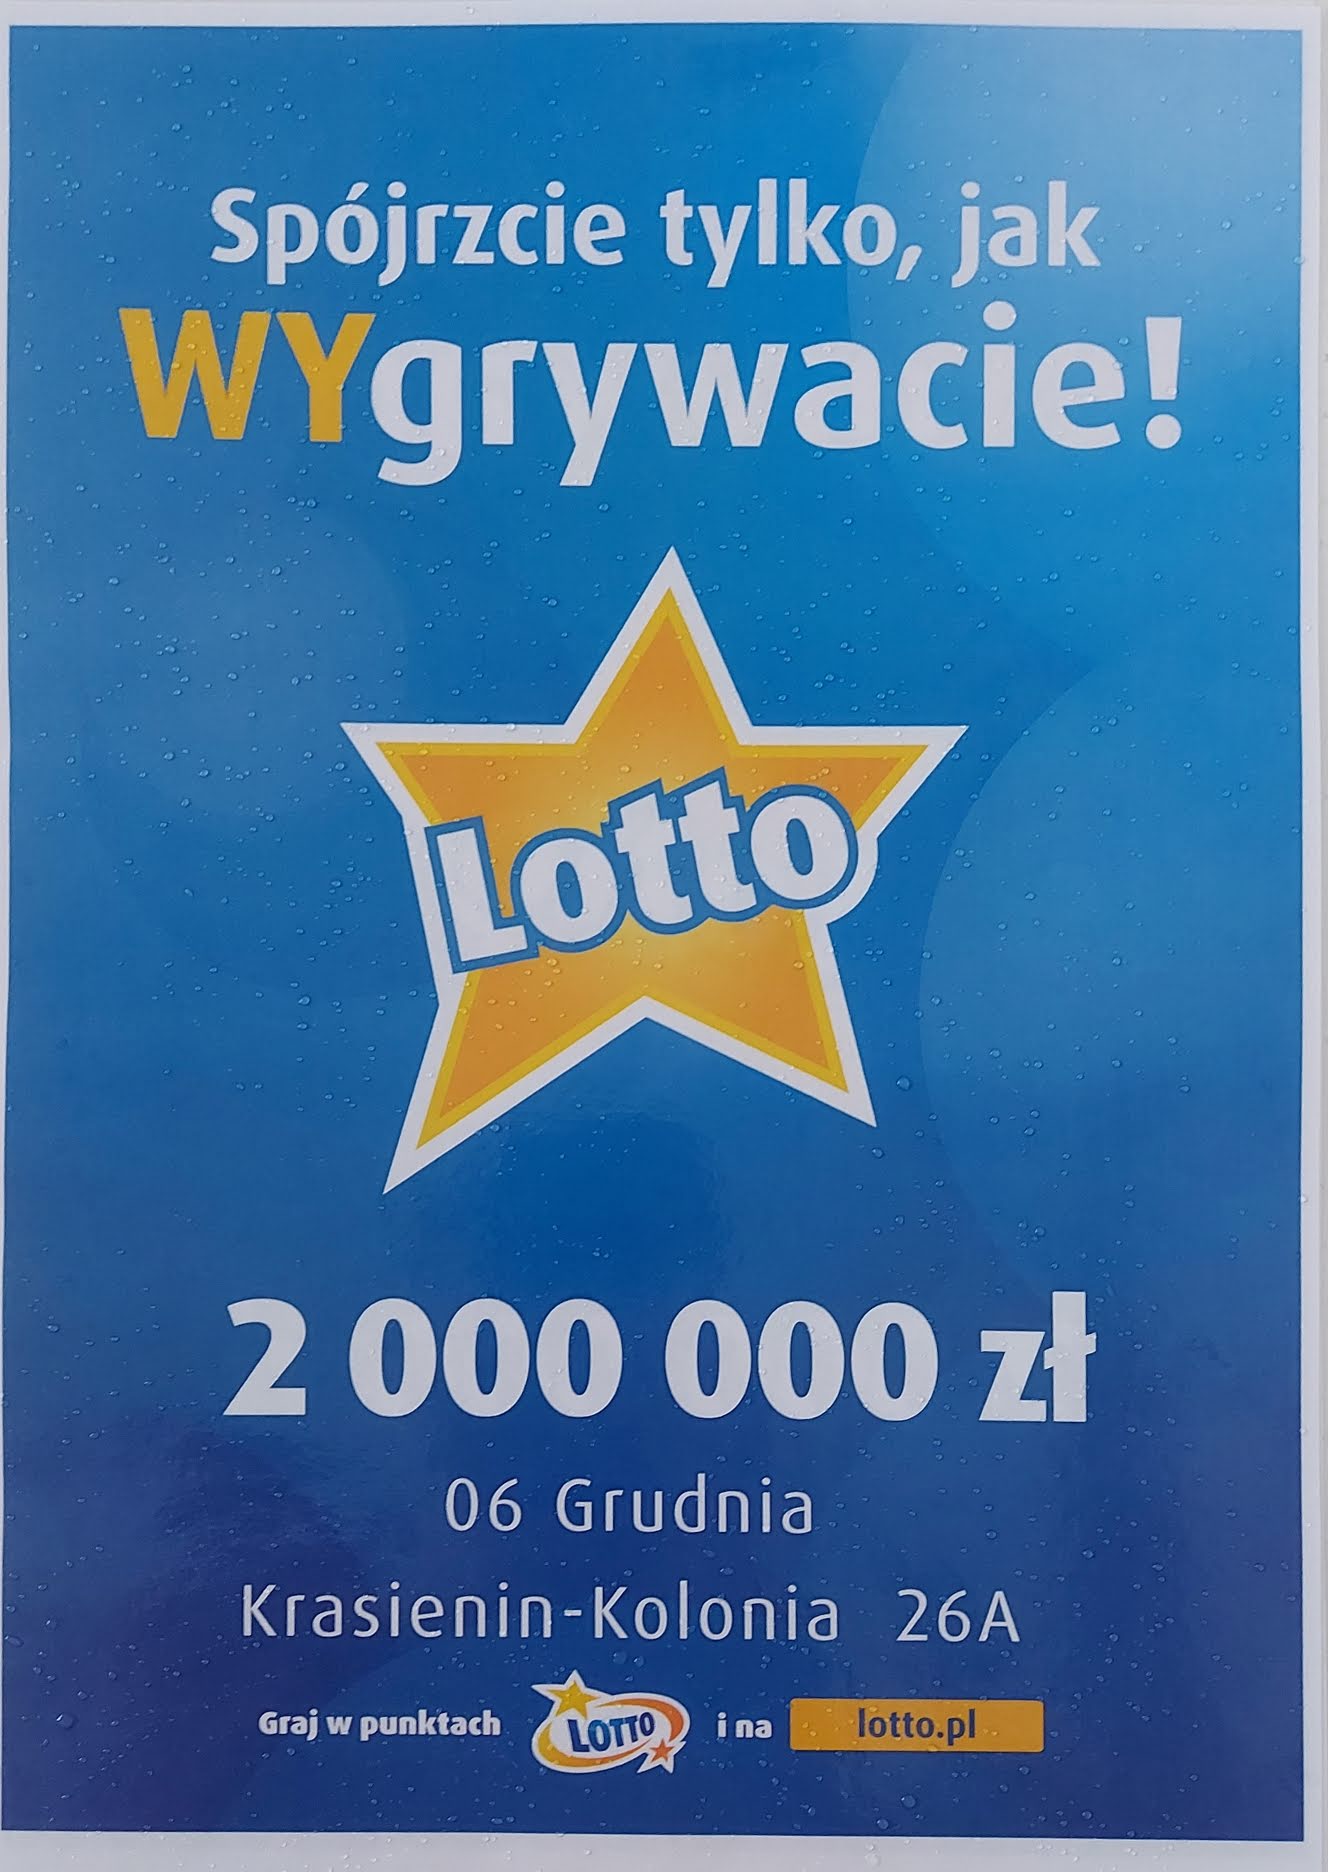 Ktoś niedaleko Lublina wygrał 2 000 000 złotych